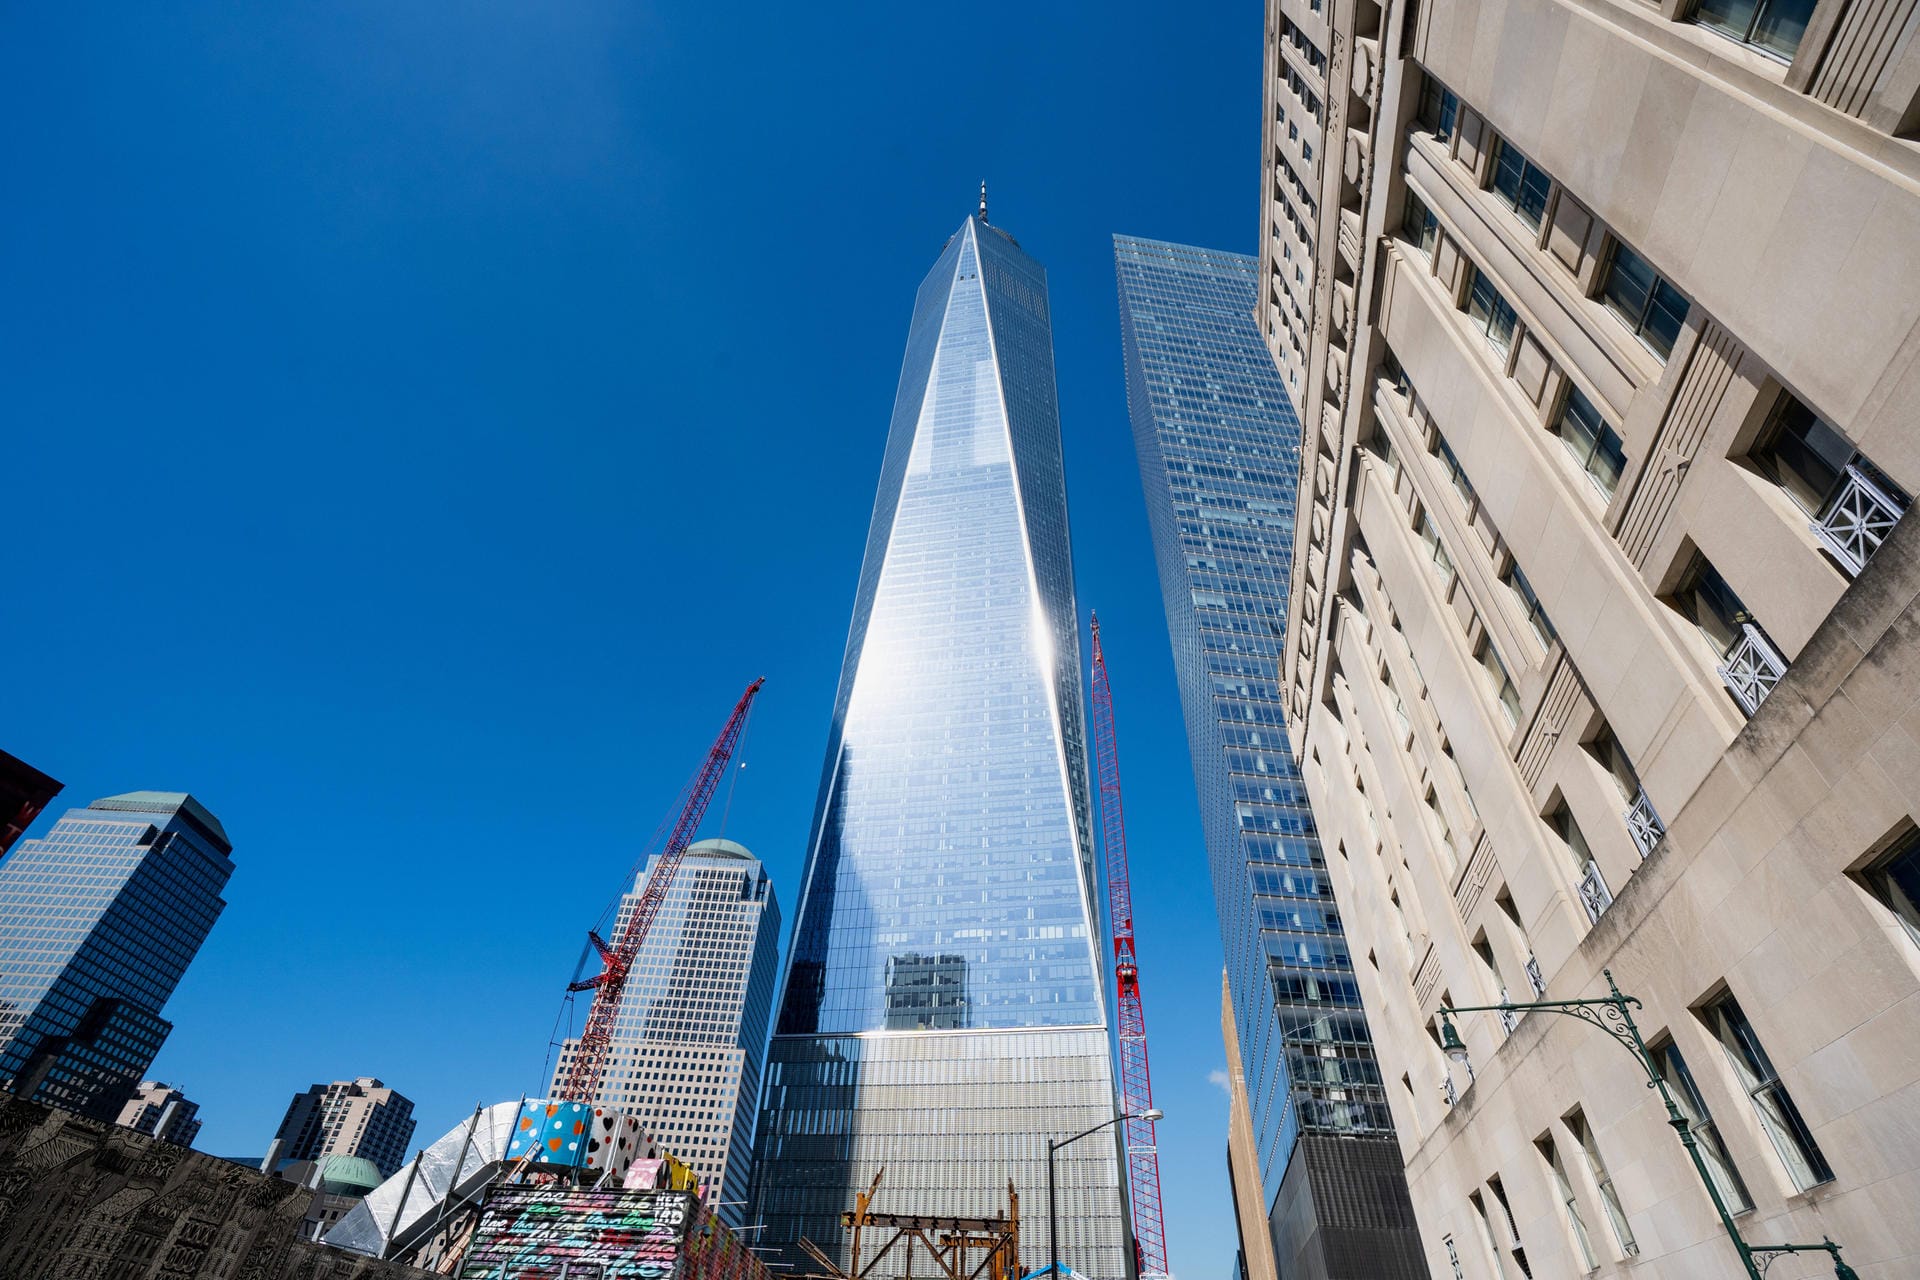 Seit 2015 steht das "One World Trade Center" neben dem "Ground Zero". Der 541,3 Meter hohe Wolkenkratzer ist das höchste Gebäude der Stadt New York.